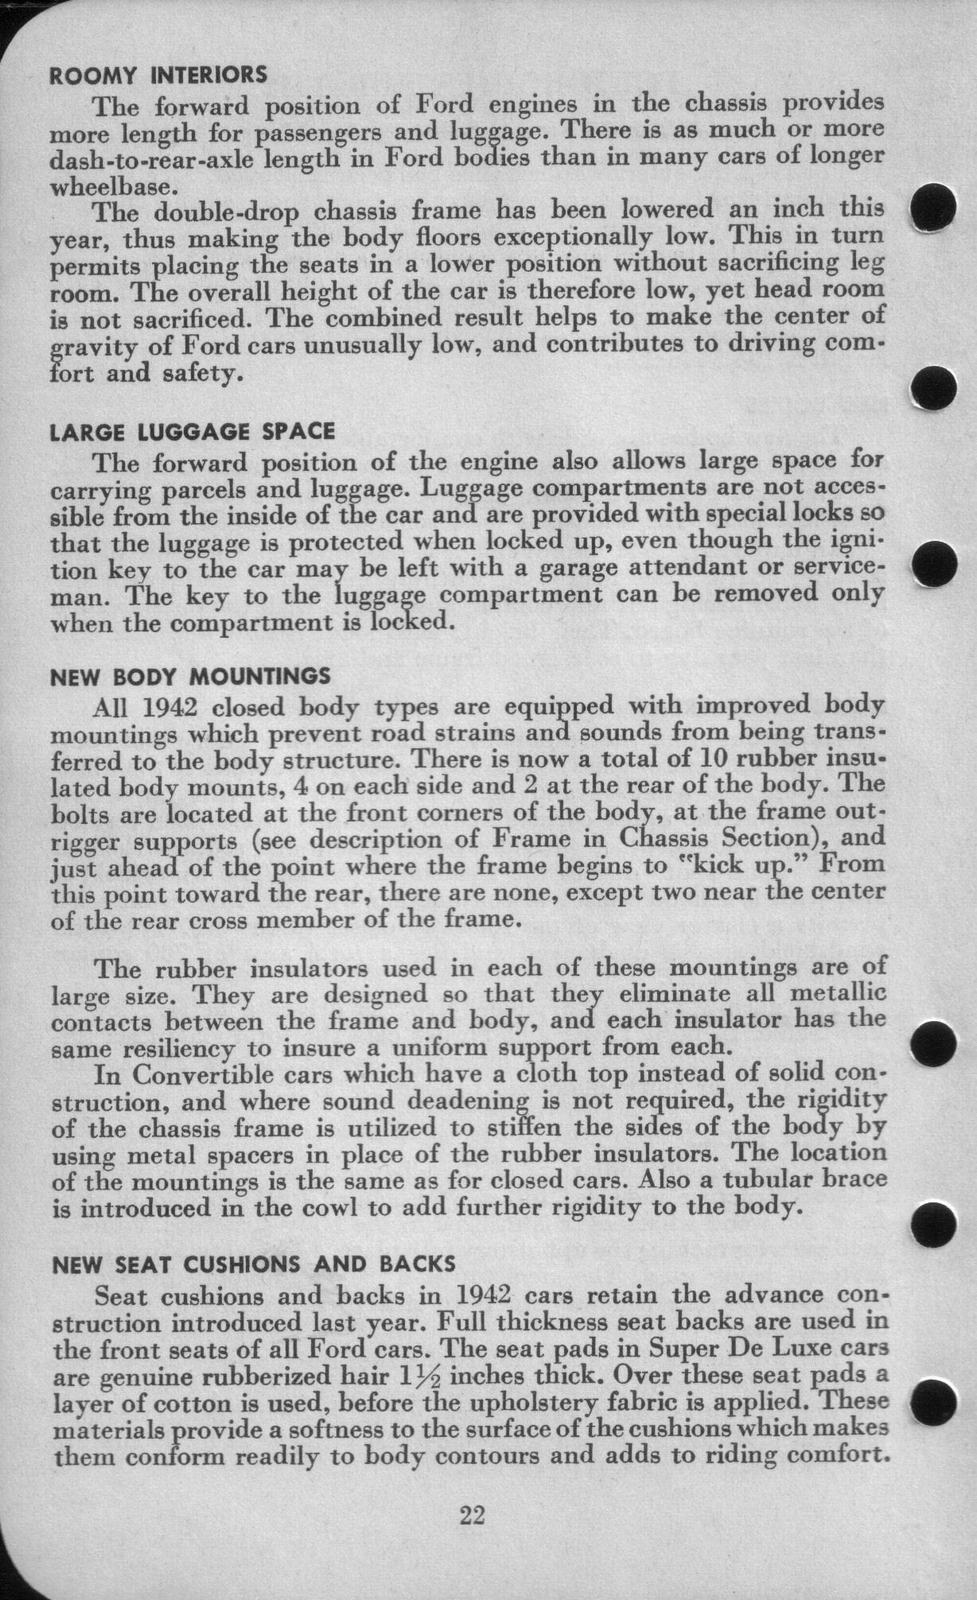 n_1942 Ford Salesmans Reference Manual-022.jpg